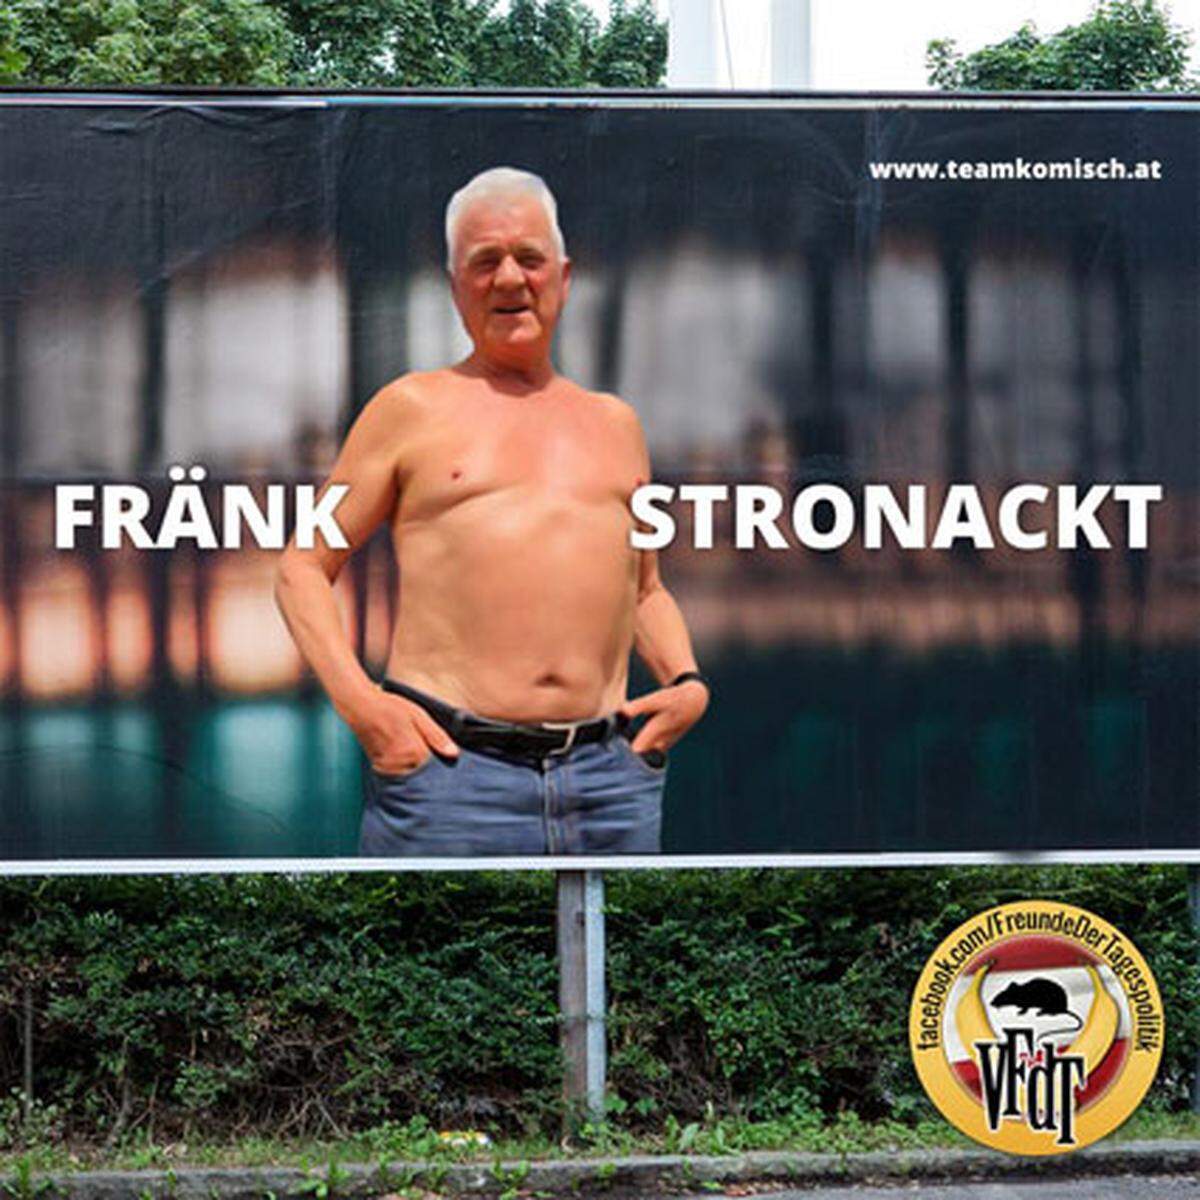 Frank Stronach ist mit seinen Bildern mit nacktem Oberkörper natürlich zum Zielobjekt vieler Internet-"Memes" geworden. Die Zuschreibung "Stronackt" ist sogar von manchen Partei-Pressediensten übernommen worden.